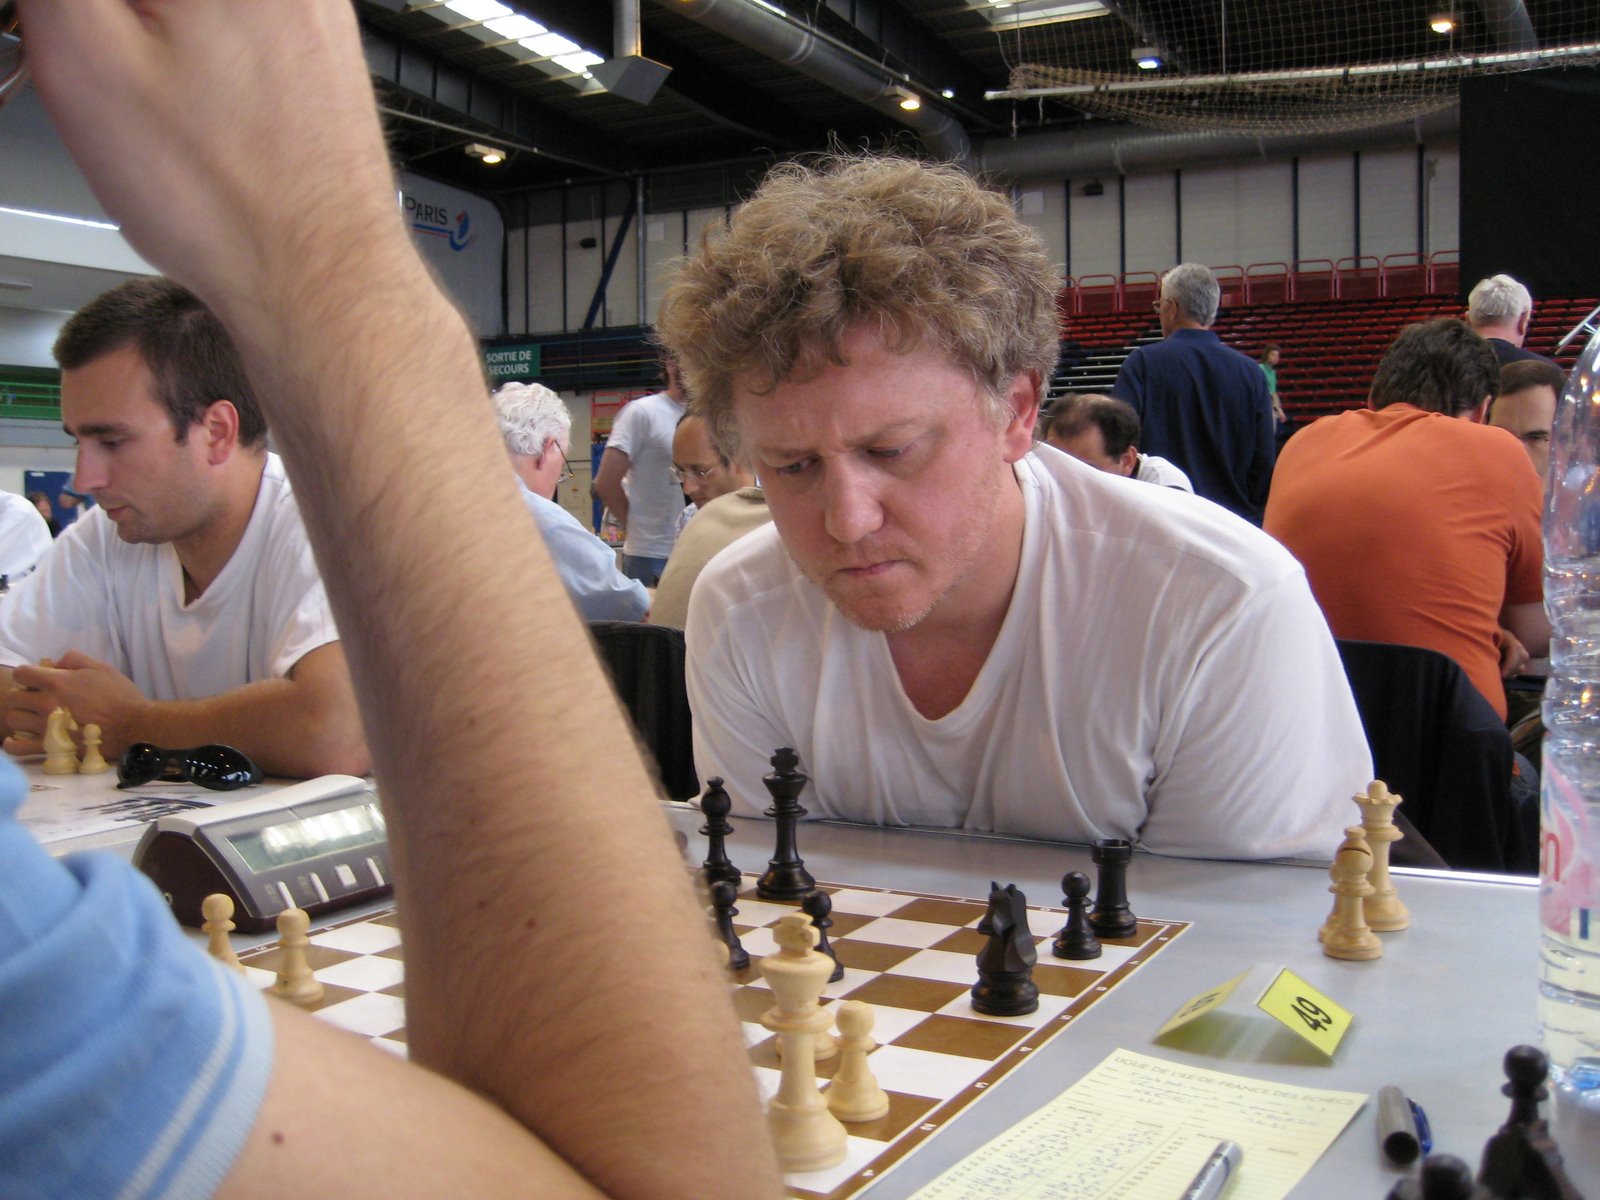 Le championnat de Paris © Chess & Strategy 